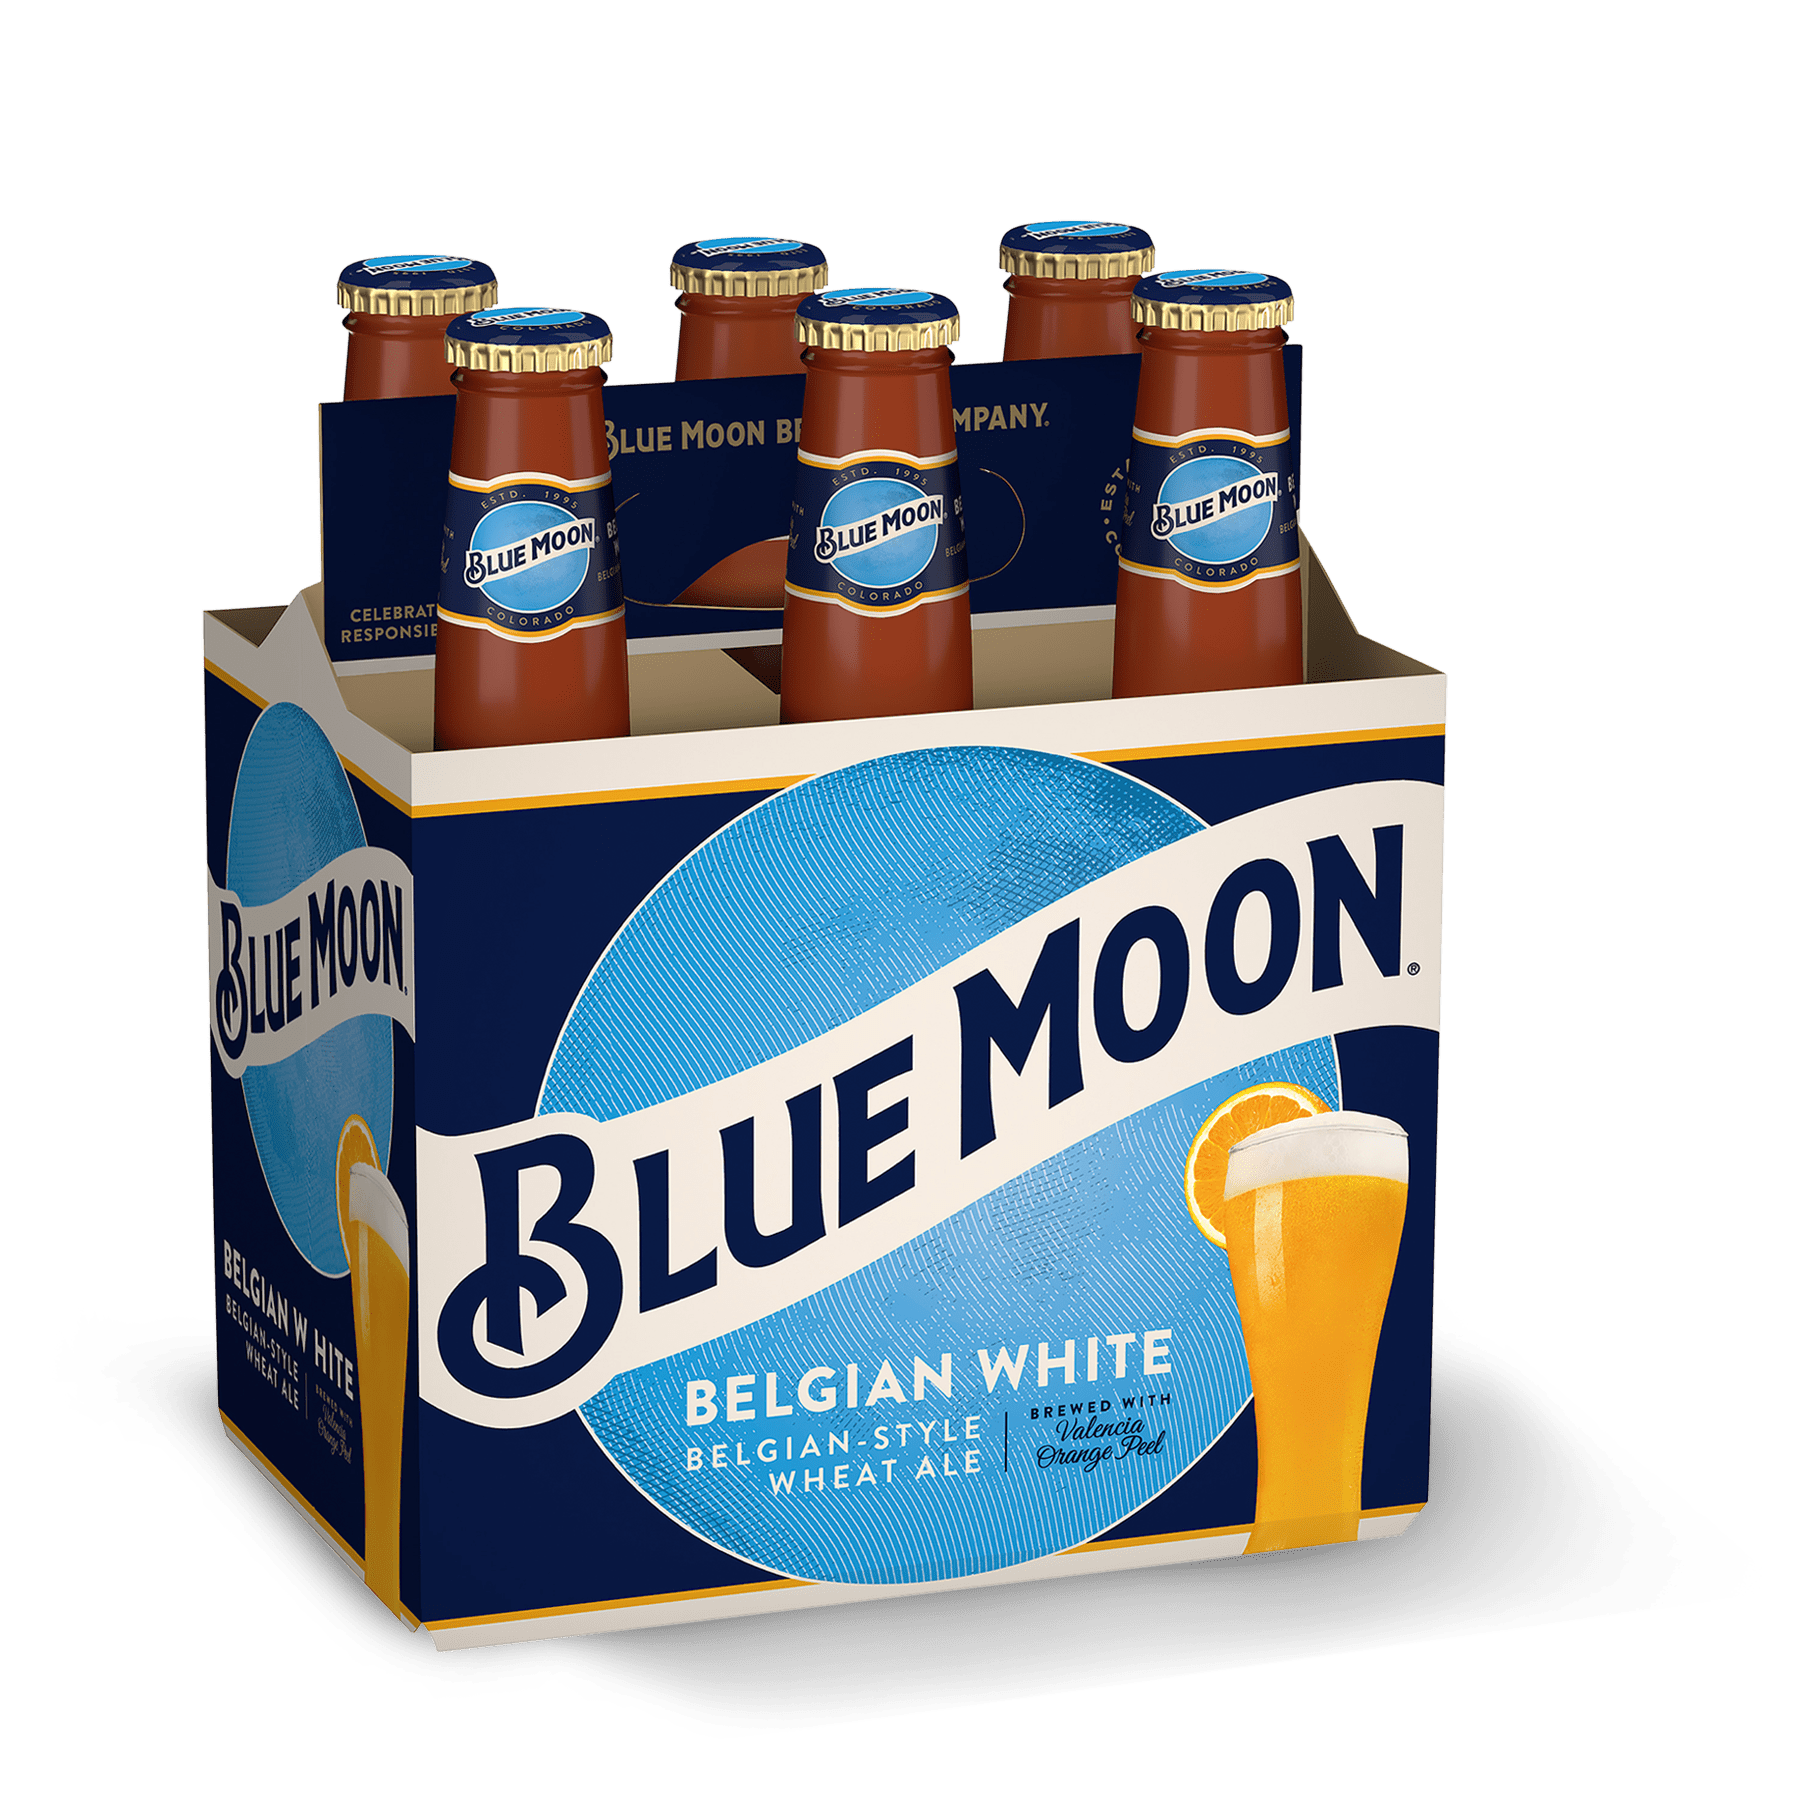 Пиво мун. Blue Moon Beer. Blue Moon Wheat Beer. Пиво с синей этикеткой. Блю манки пиво.